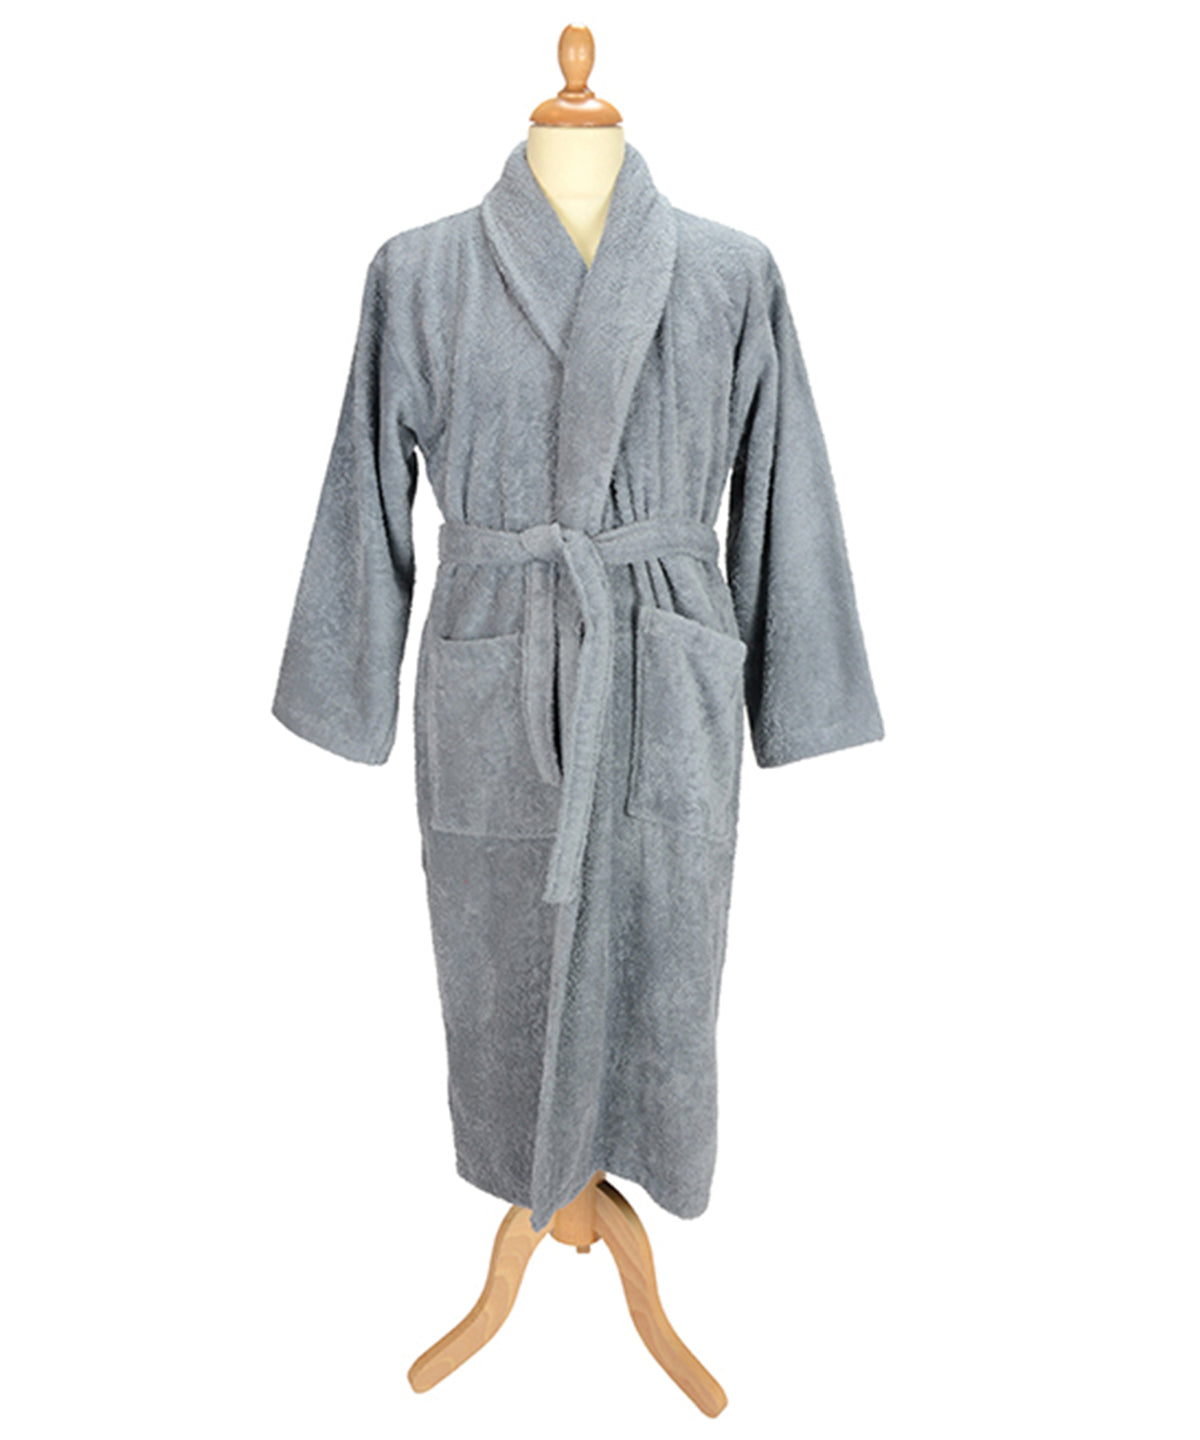 Sloppar - ARTG® Bath Robe With Shawl Collar